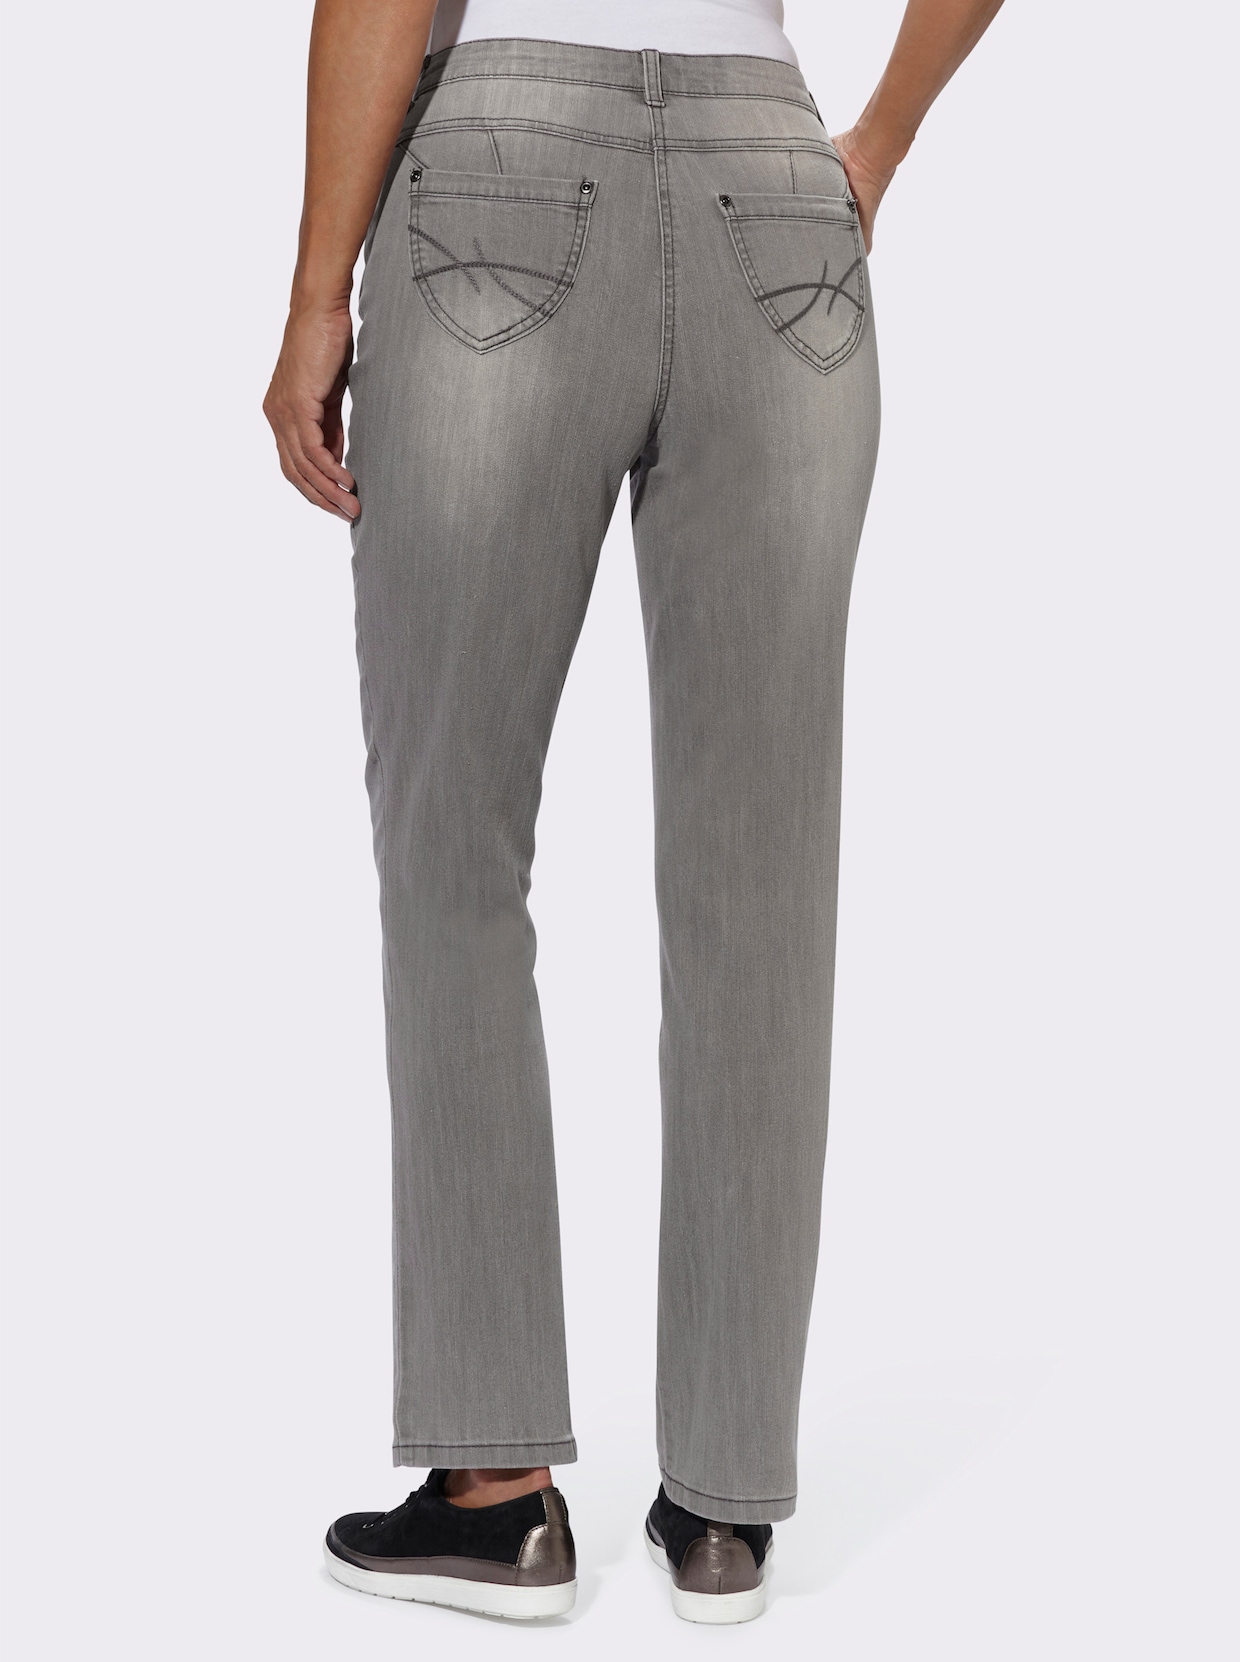 Jean 5 poches - denim gris